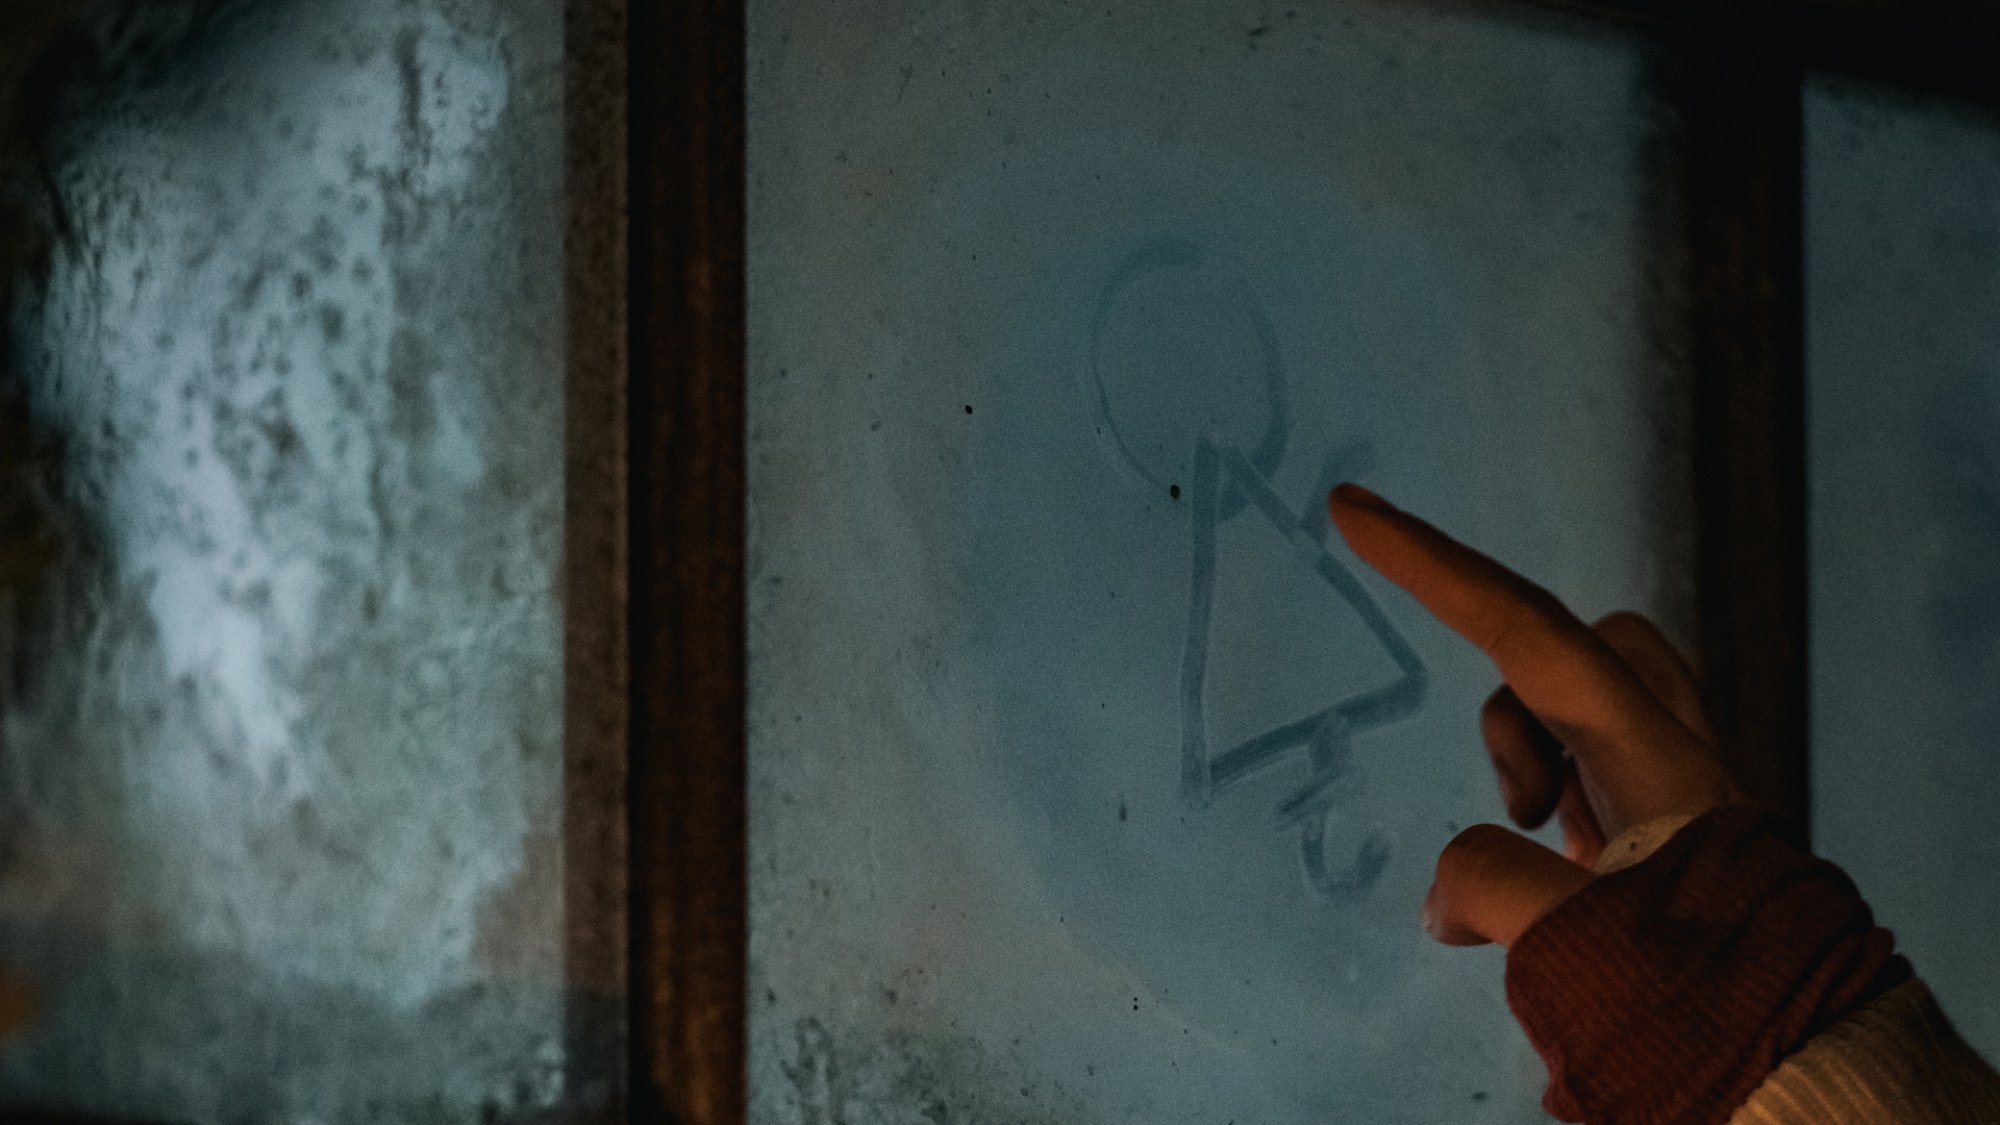 La main d'une fille a dessiné un symbole étrange dans une fenêtre de cabine brumeuse.